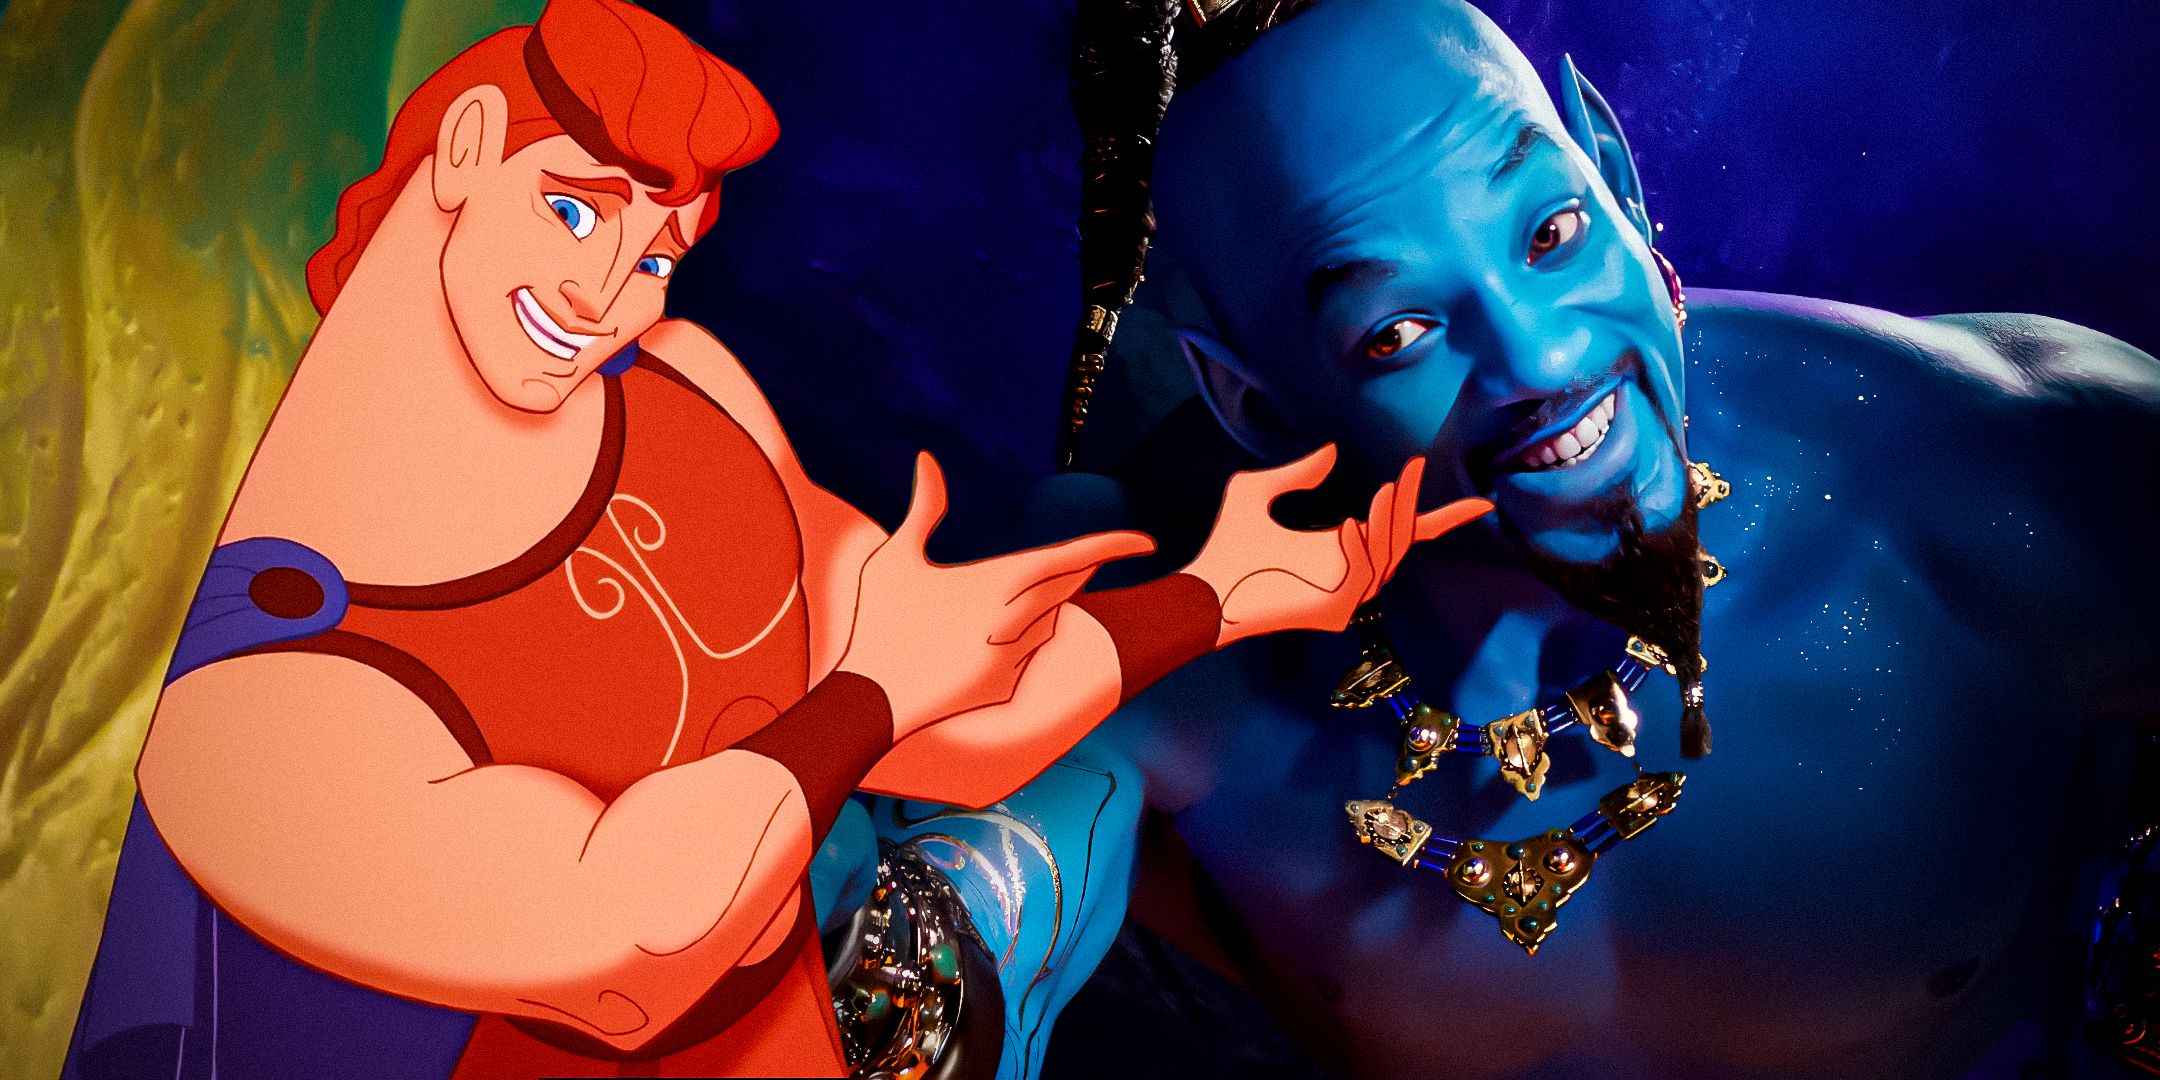 O Gênio-de-Will-Smith-de-Aladdin-(2019)-e-o-animado-Hércules-do-moive-1997